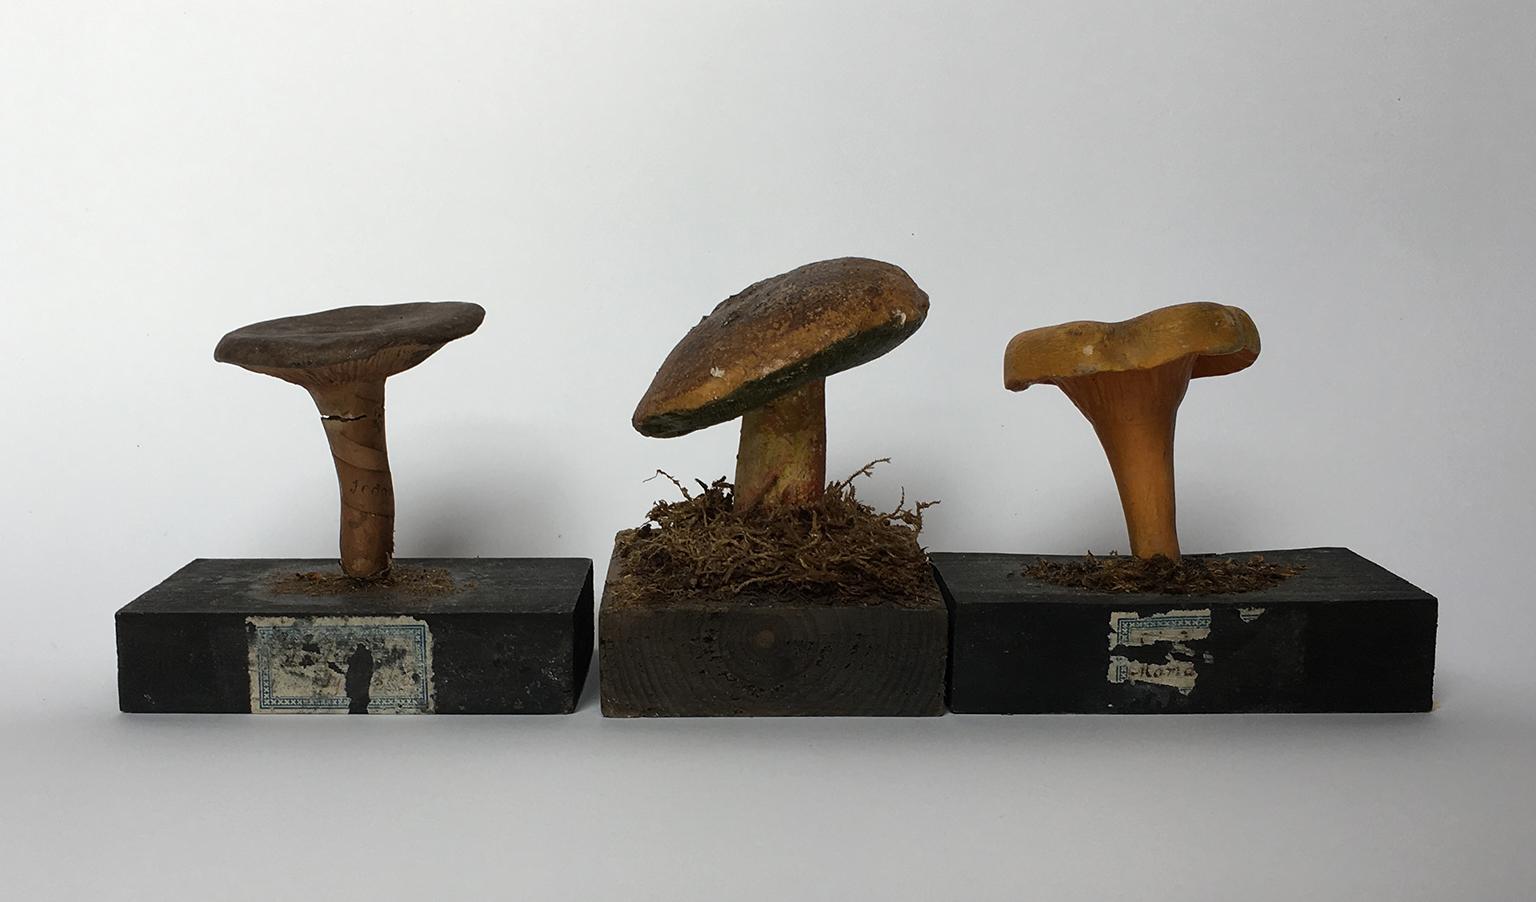 plaster mushroom